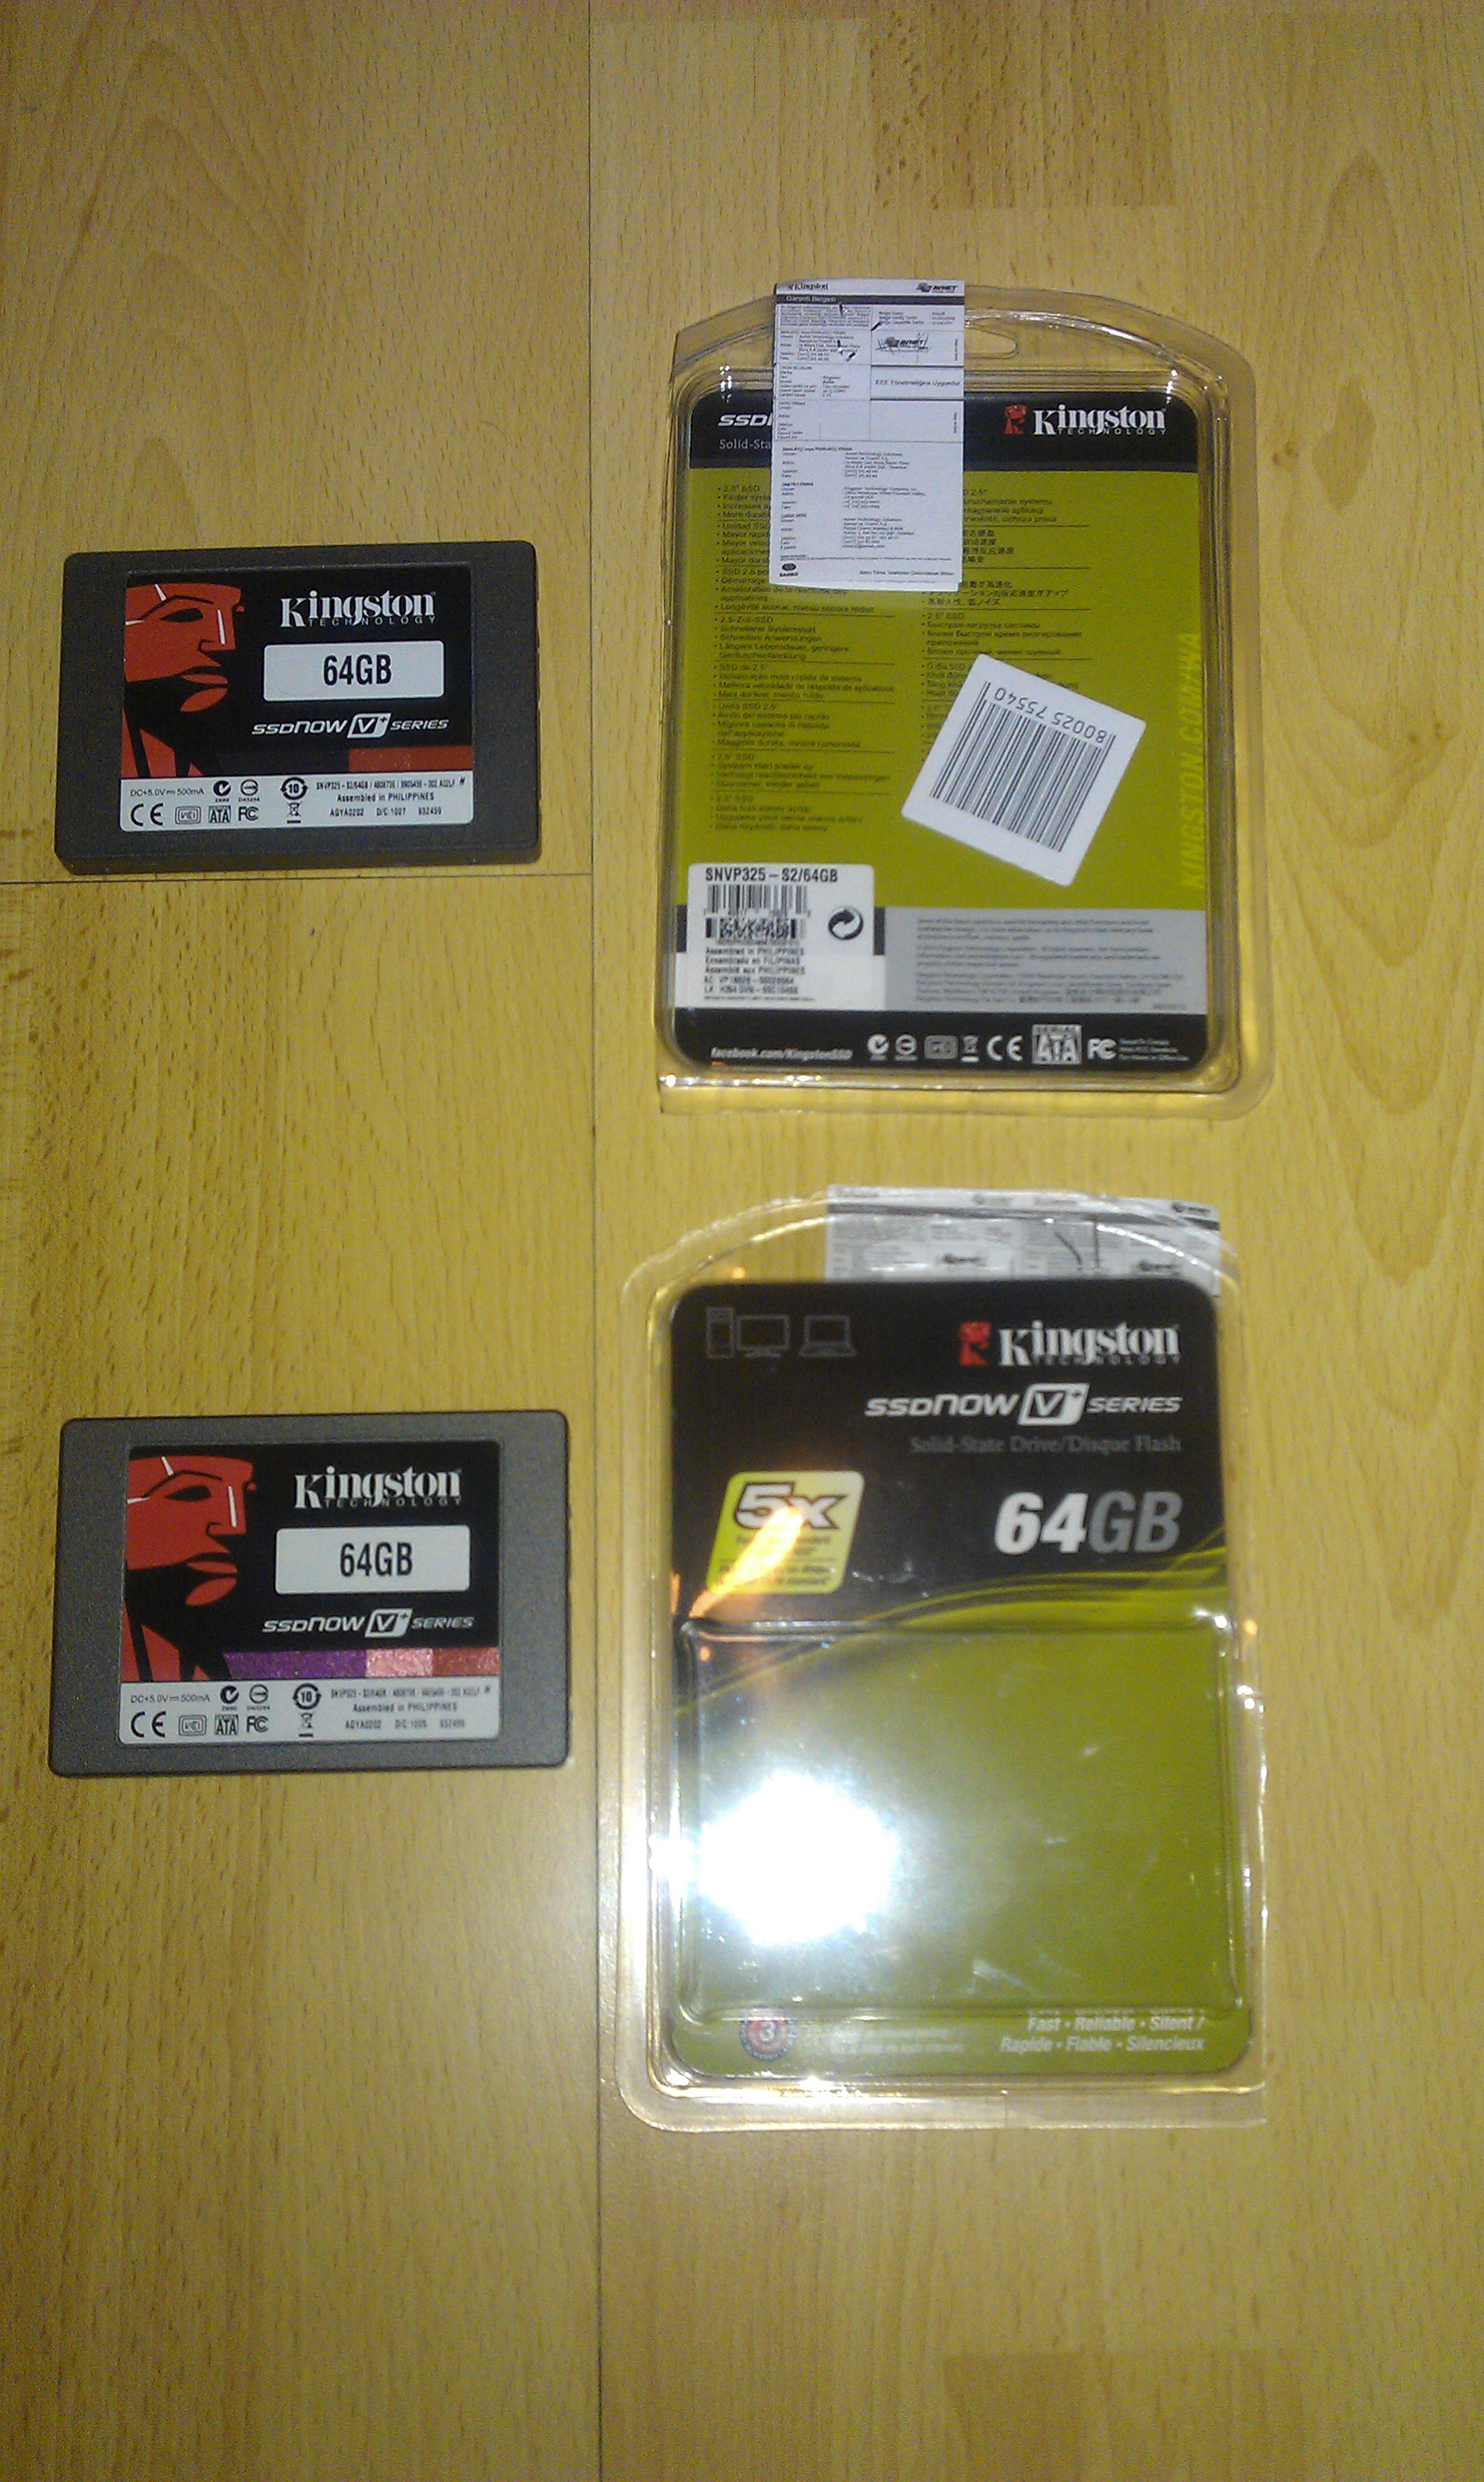  Kingston 64GB SSDNow V+ Serisi 230-180MB Fiyat Düştü  130 TL